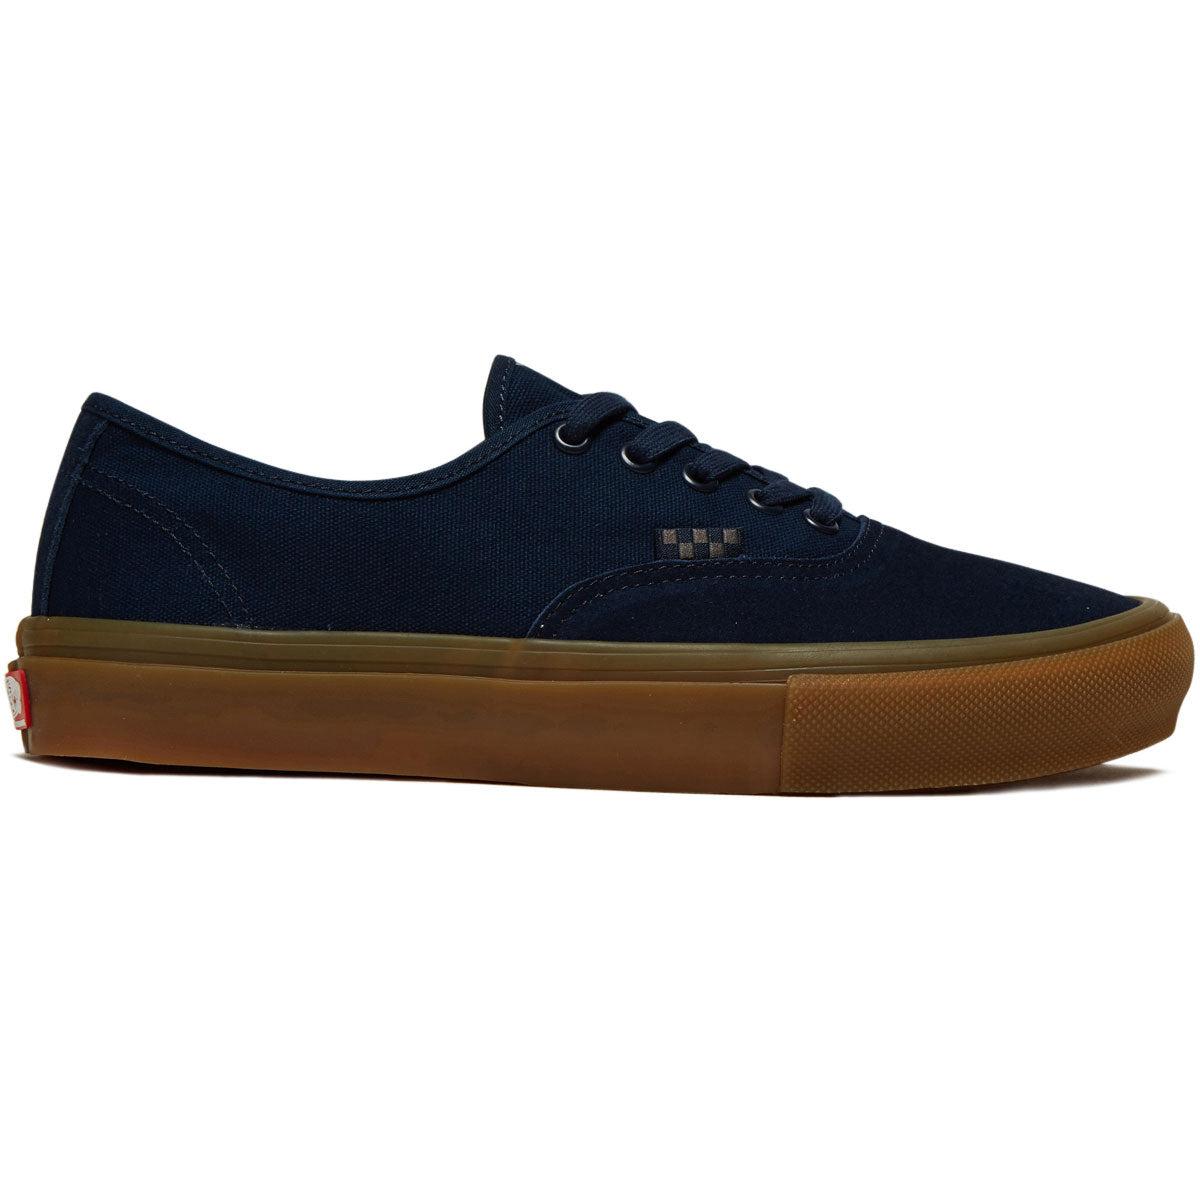 Vans Skate Authentic Shoes - Navy/Gum image 1